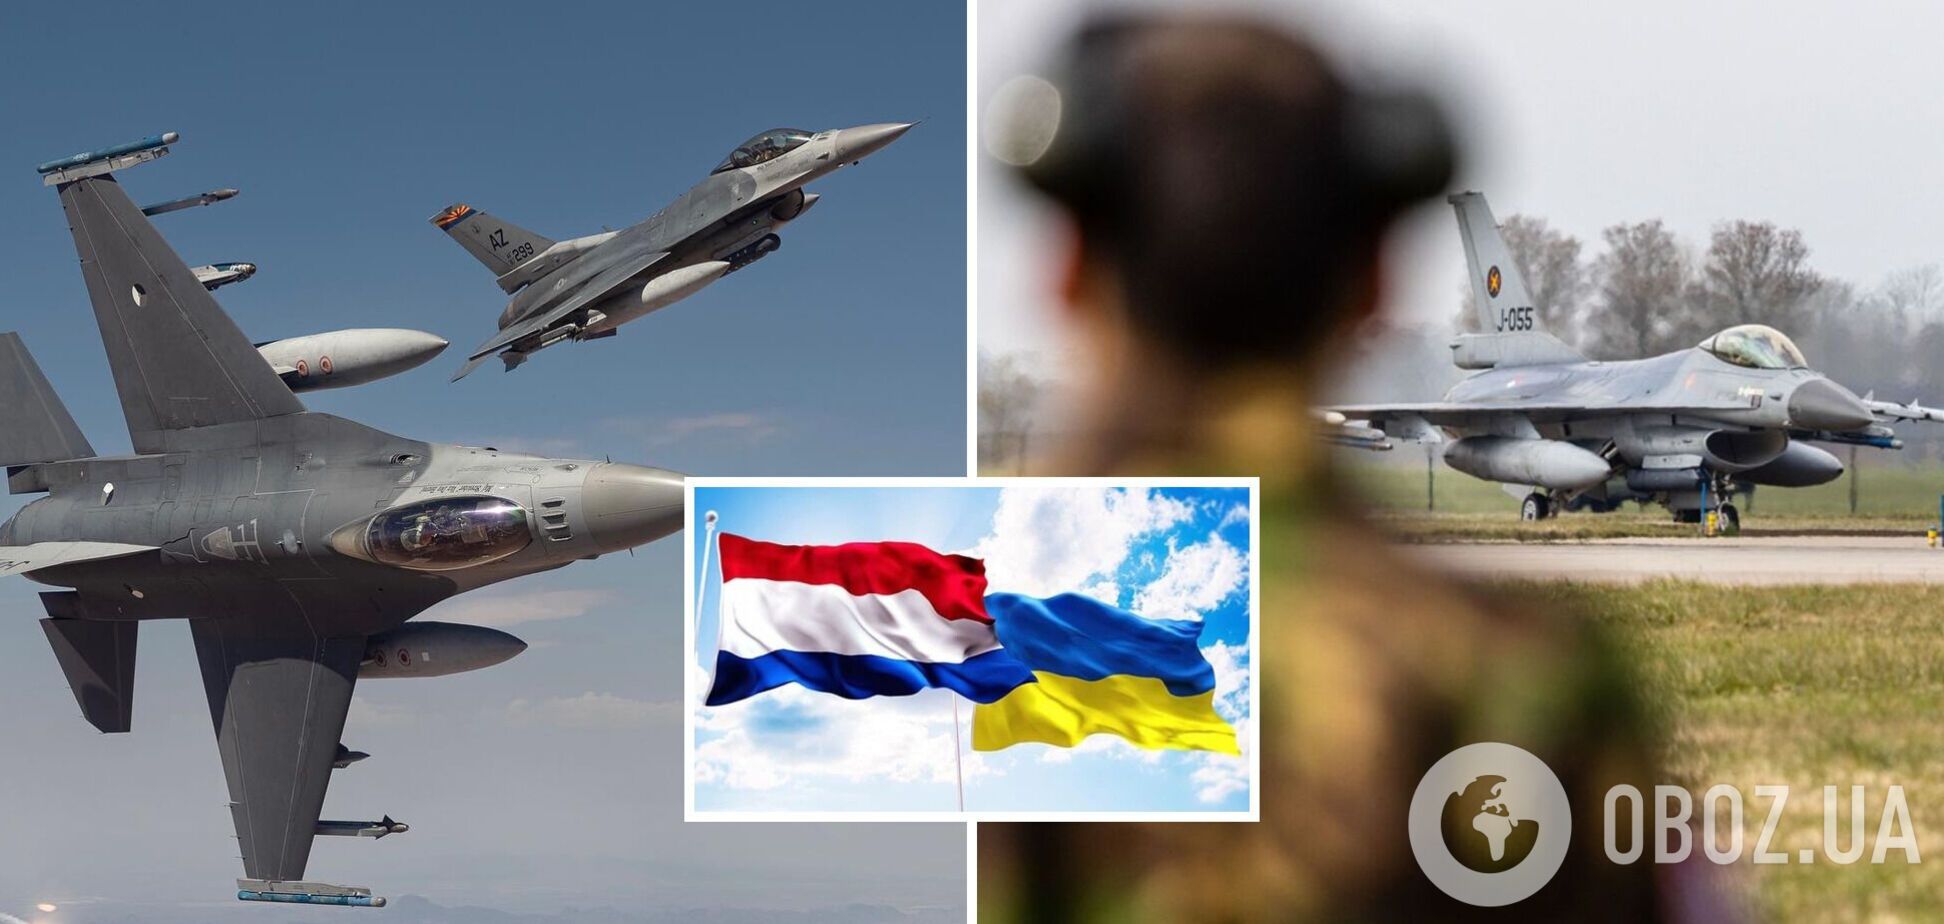 Нідерланди незабаром розпочнуть навчання українських пілотів на винищувачах F-16, – глава МЗС